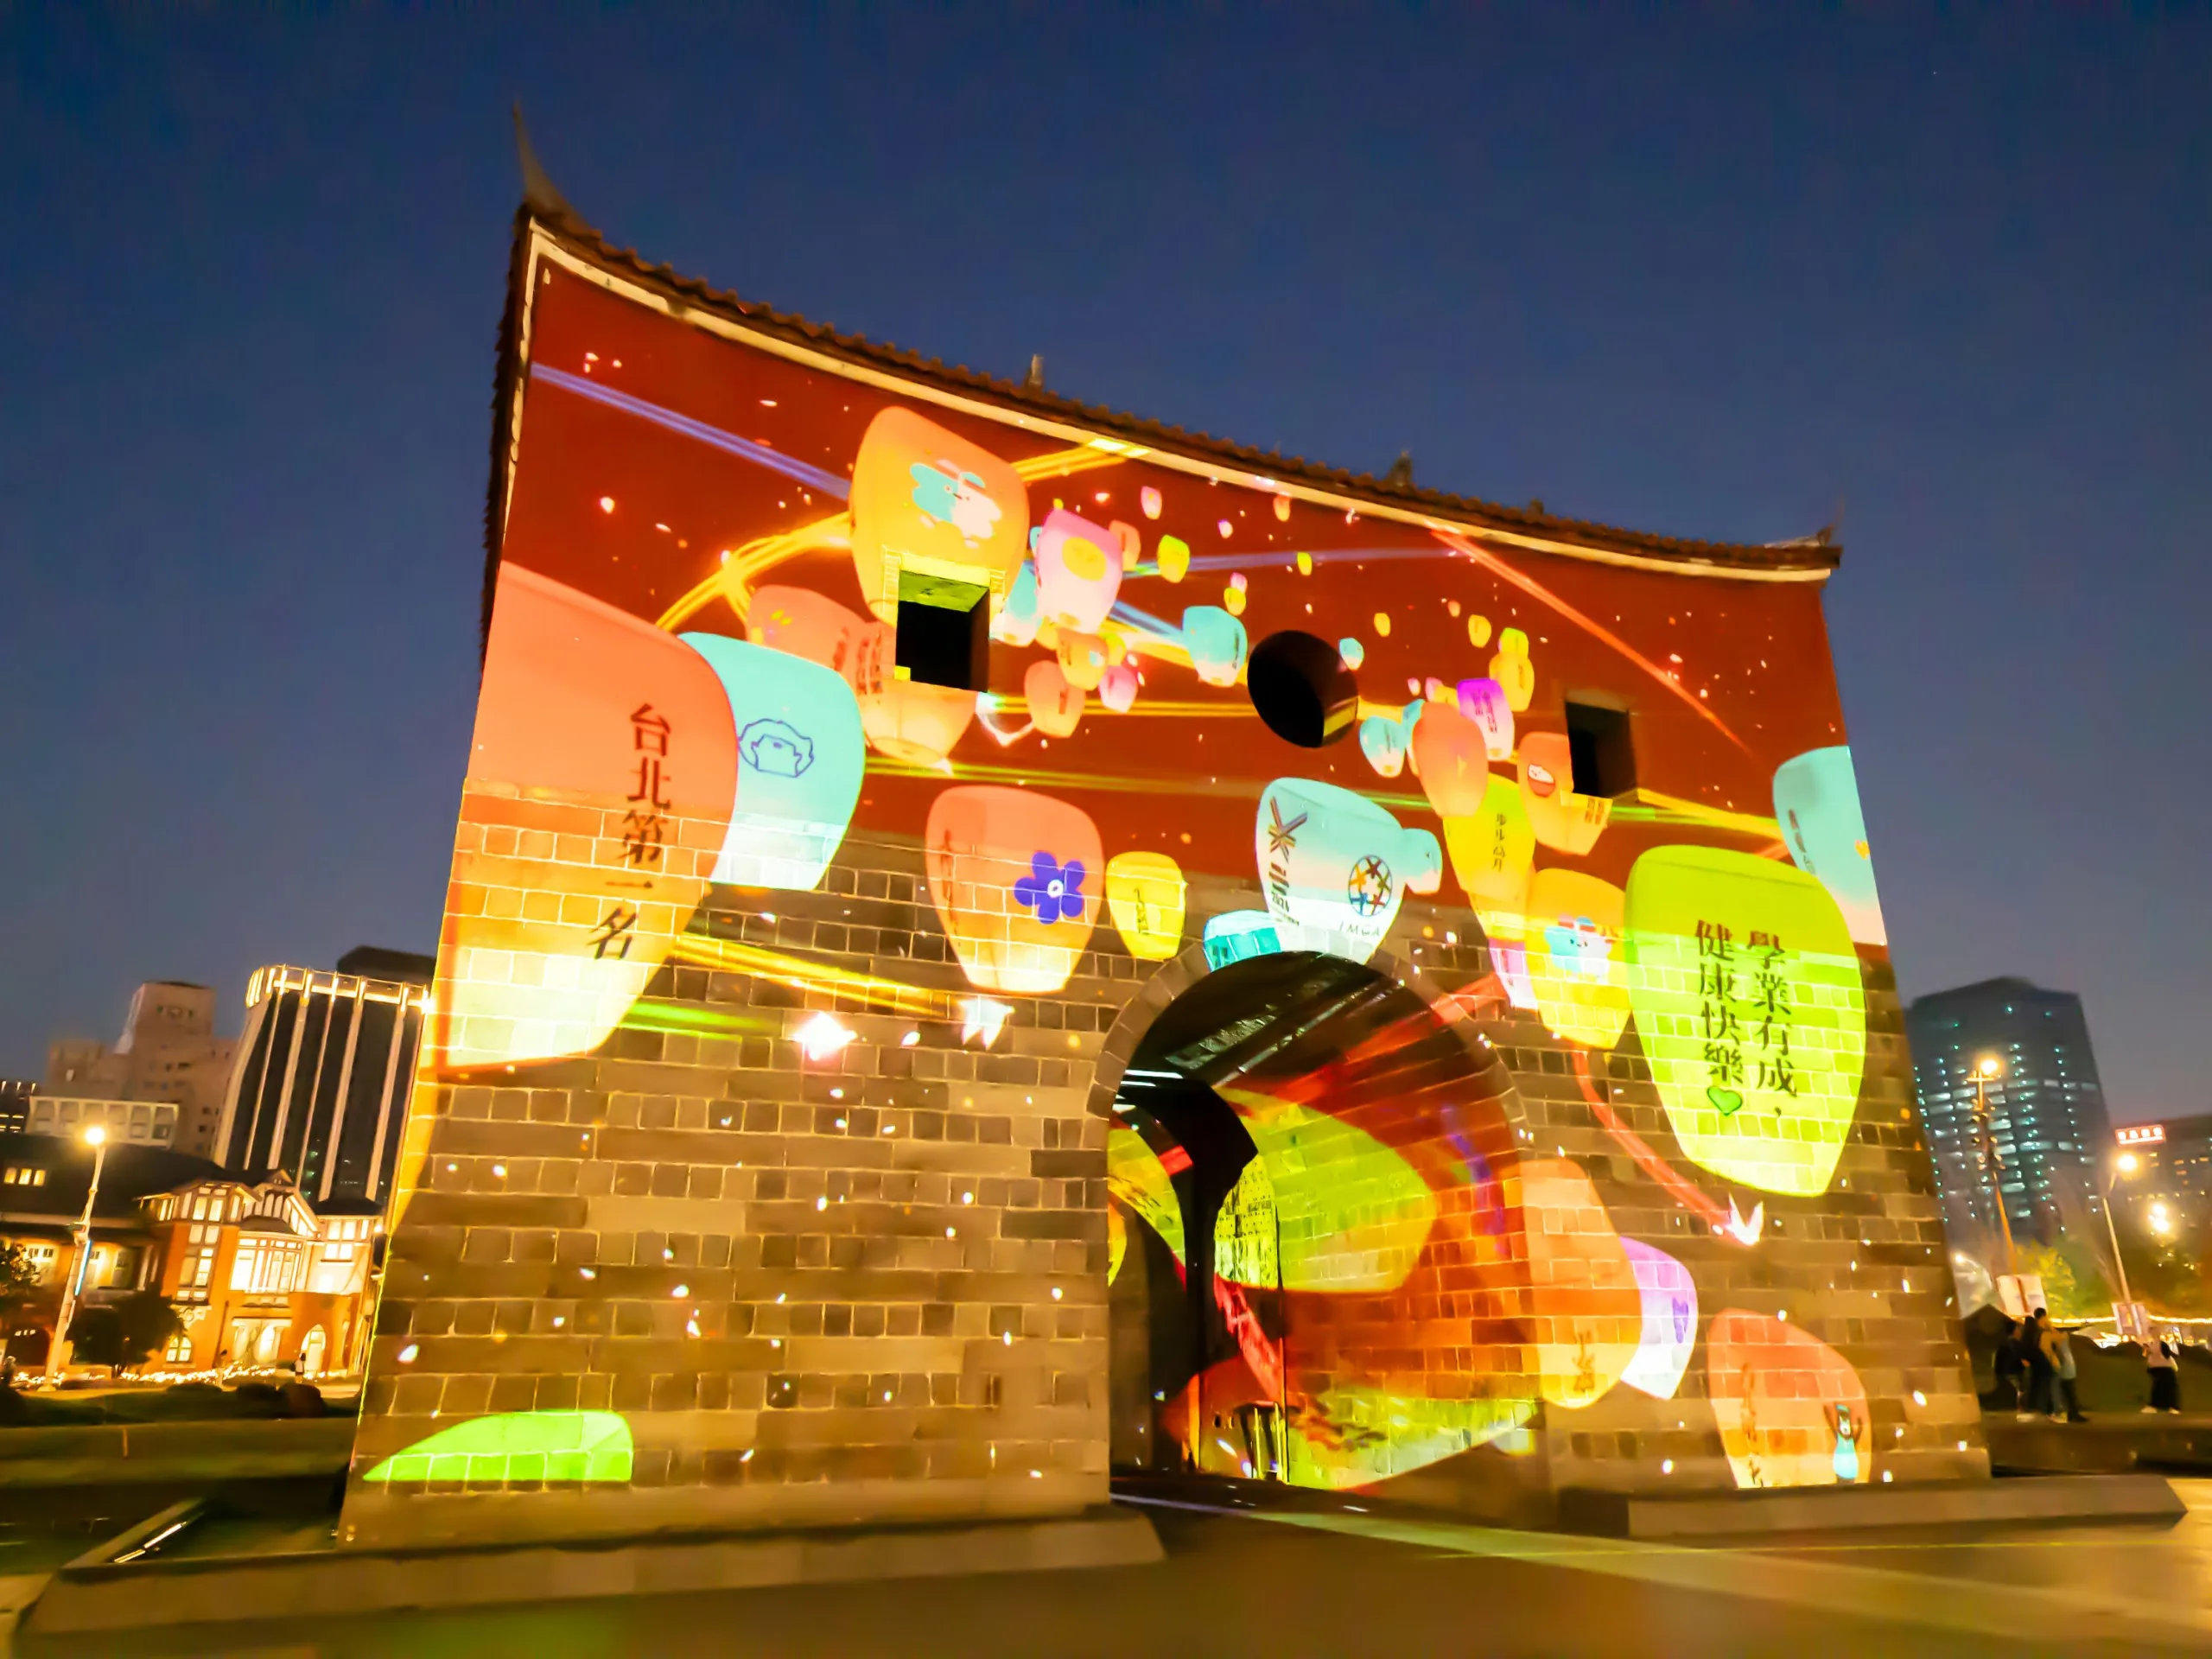 「北門の映像」と題された光の彫刻パフォーマンスは、初めてのインタラクティブな体験を導入しています。来場者はスマートフォンでQRコードをスキャンし、北門に自分の新年の願いや祝福を映し出すことができます。